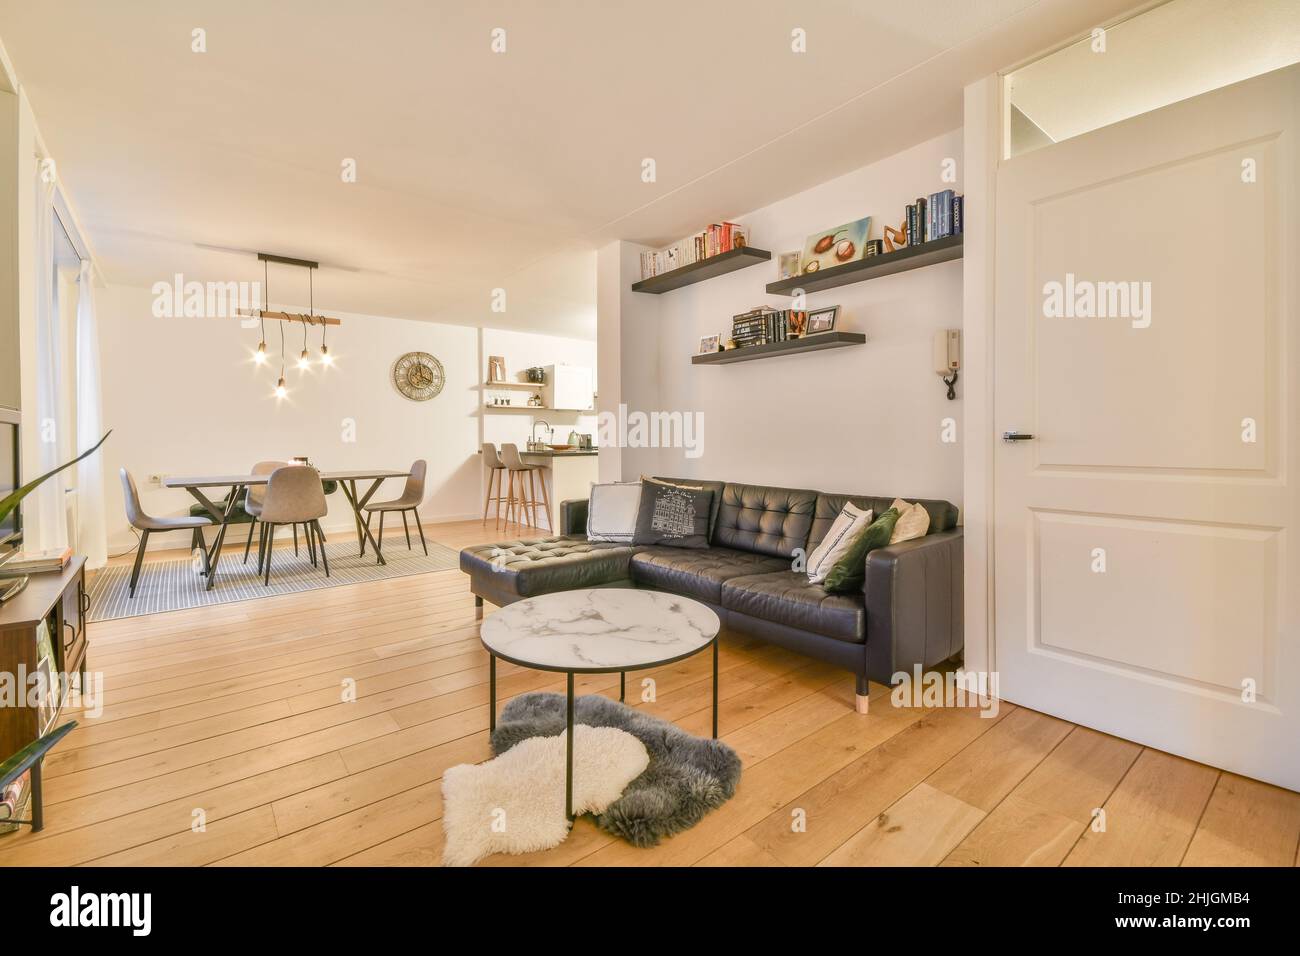 Bellissimo soggiorno interno con pavimenti in legno Foto Stock